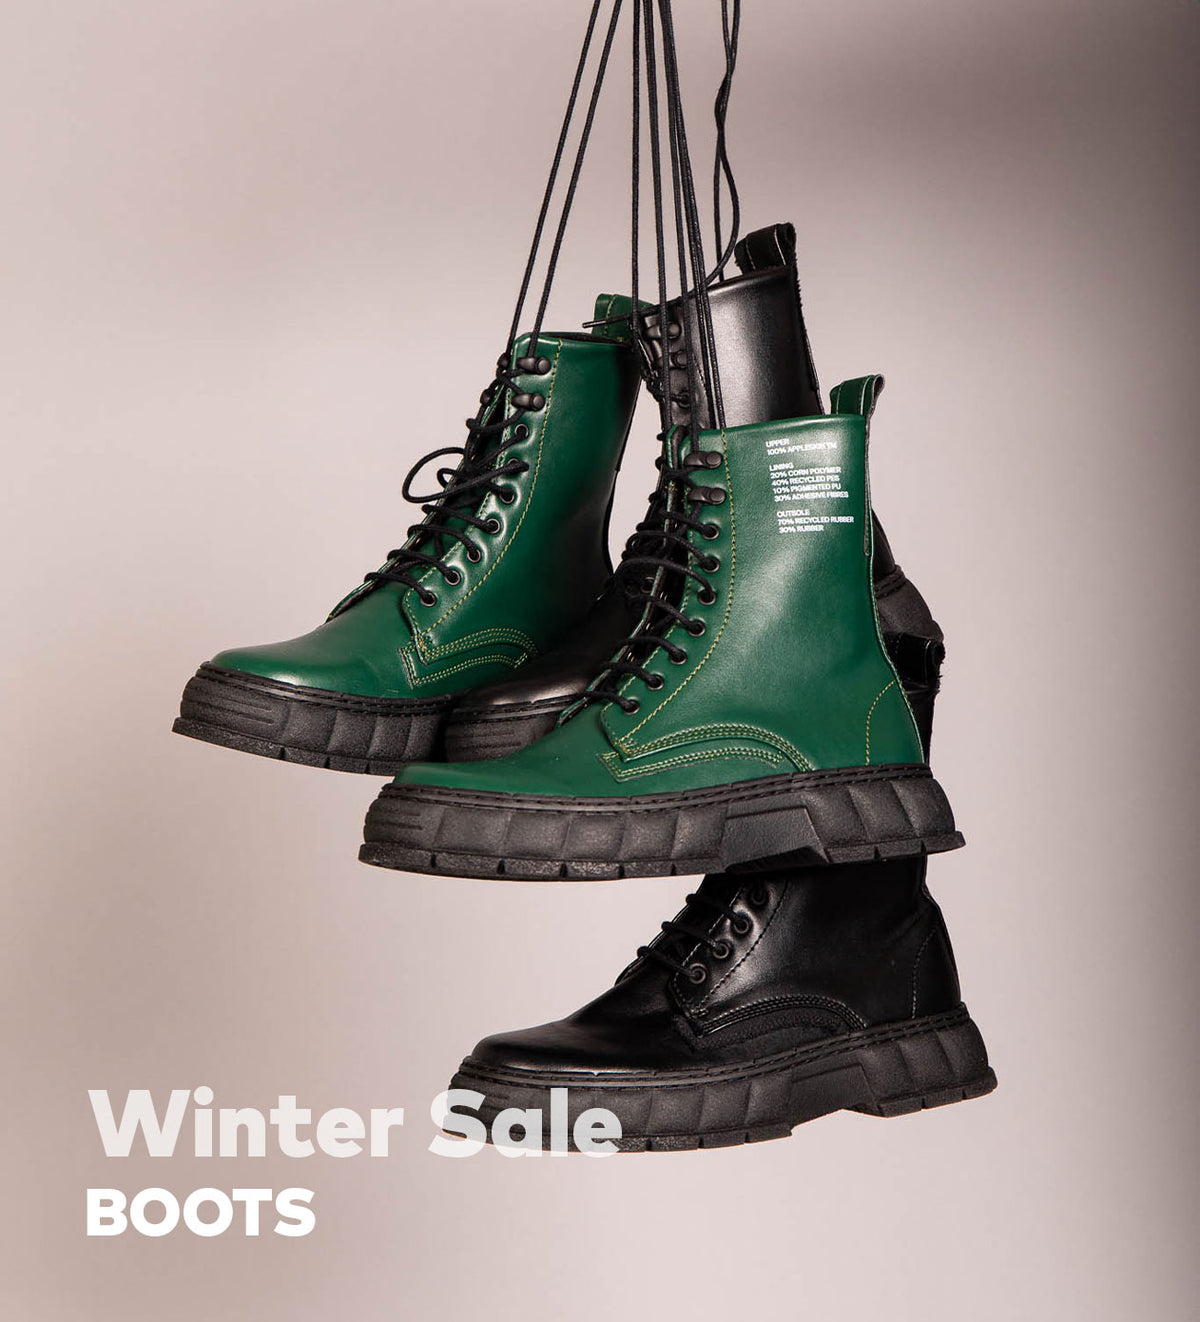 ZIGZAG — Winter Footwear Sale Boots